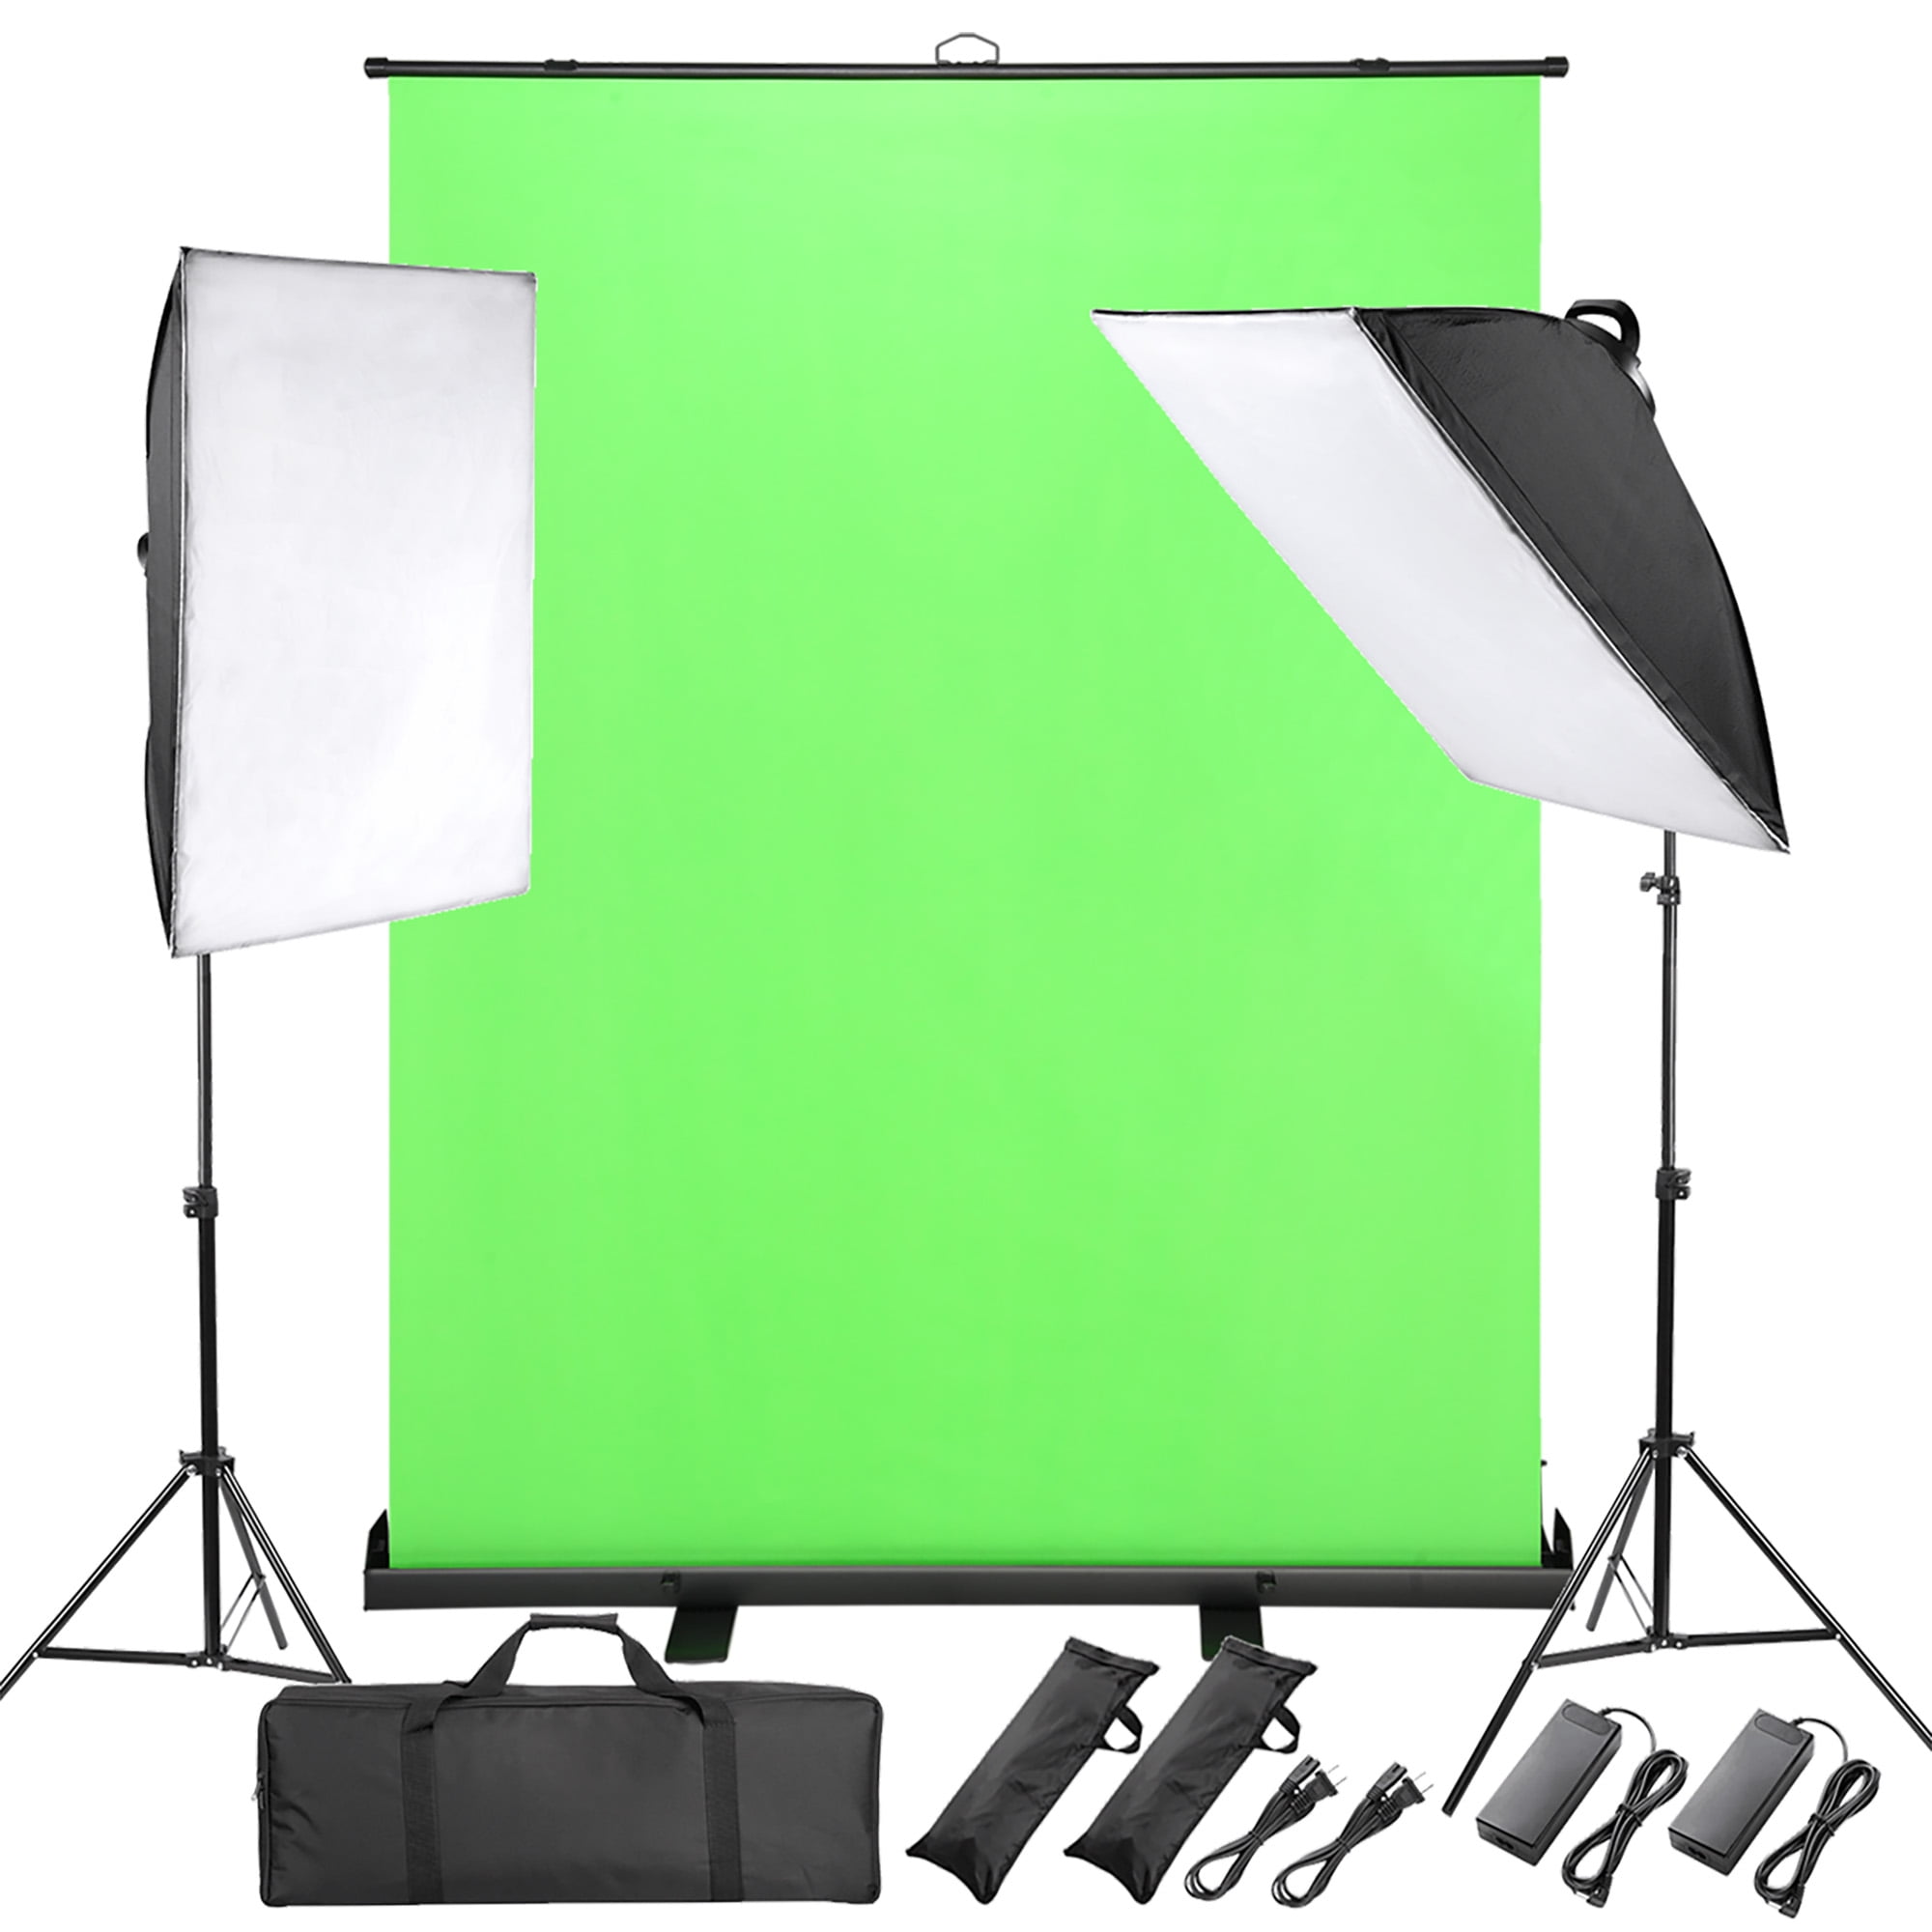 Tìm hiểu và khám phá bộ dụng cụ Green Screen Kit vô cùng tiện lợi và dễ sử dụng! Với tính năng gập gọn compact, nó mang lại sự tiện lợi tối đa cho việc đóng phim hoặc chụp ảnh. Hãy trải nghiệm sự đột phá của Green Screen kit với chúng tôi ngay bây giờ!